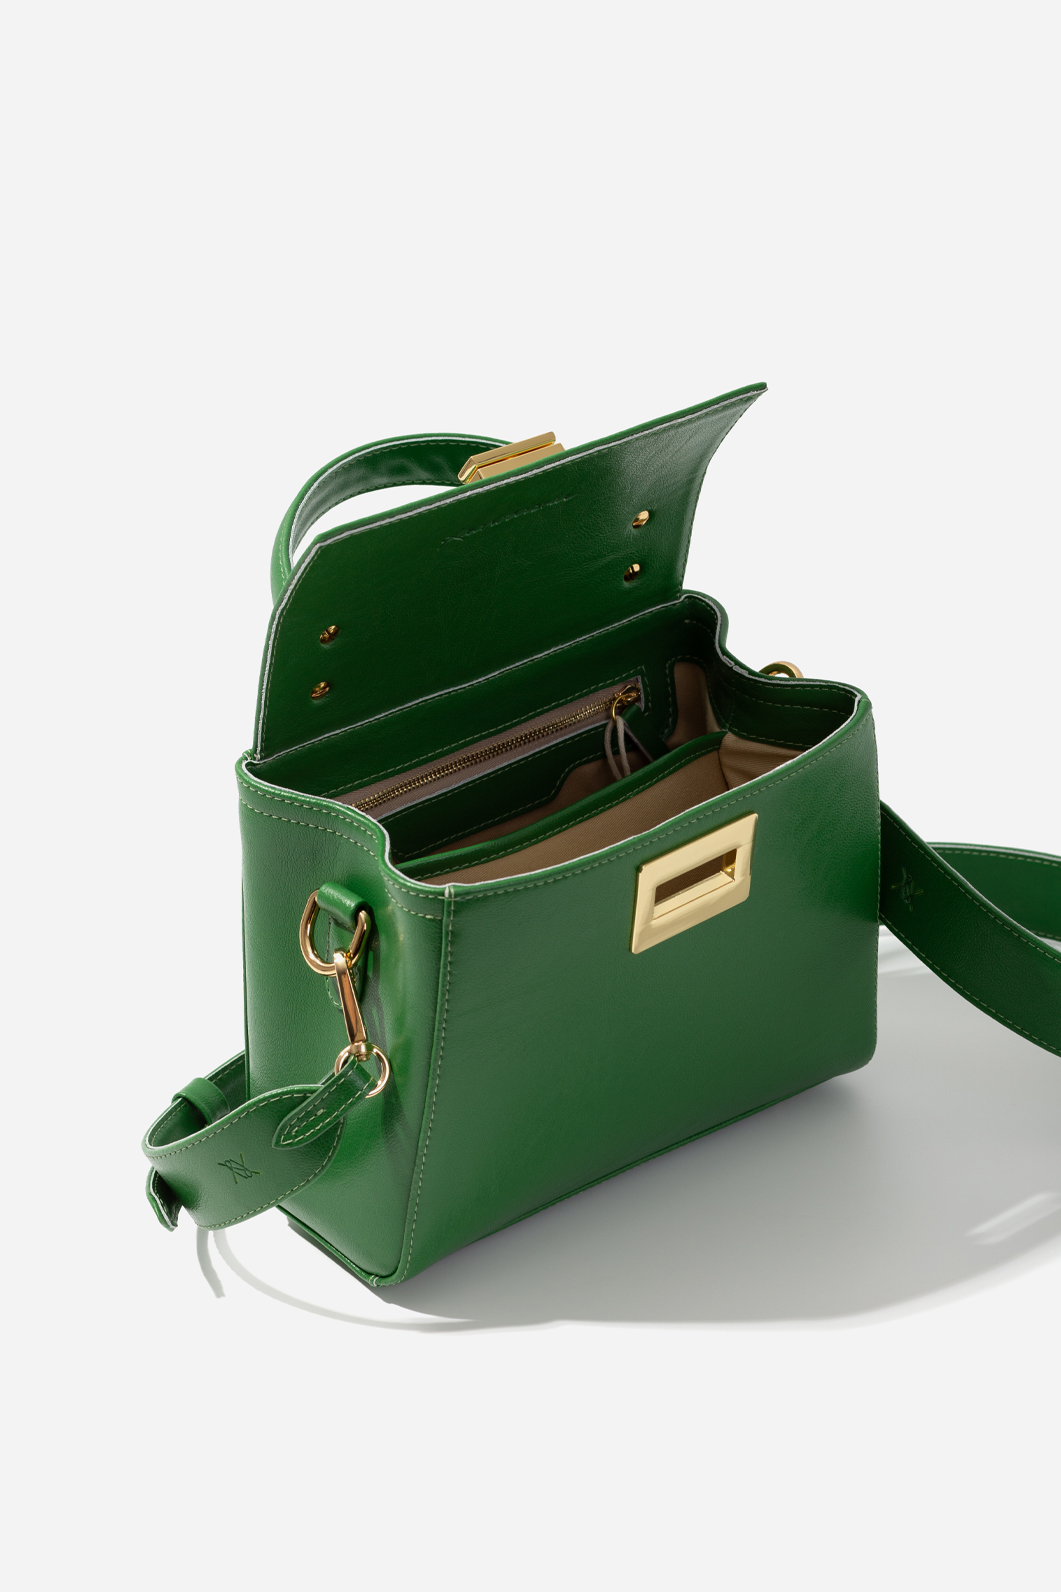 ERNA MINI green bag /gold/